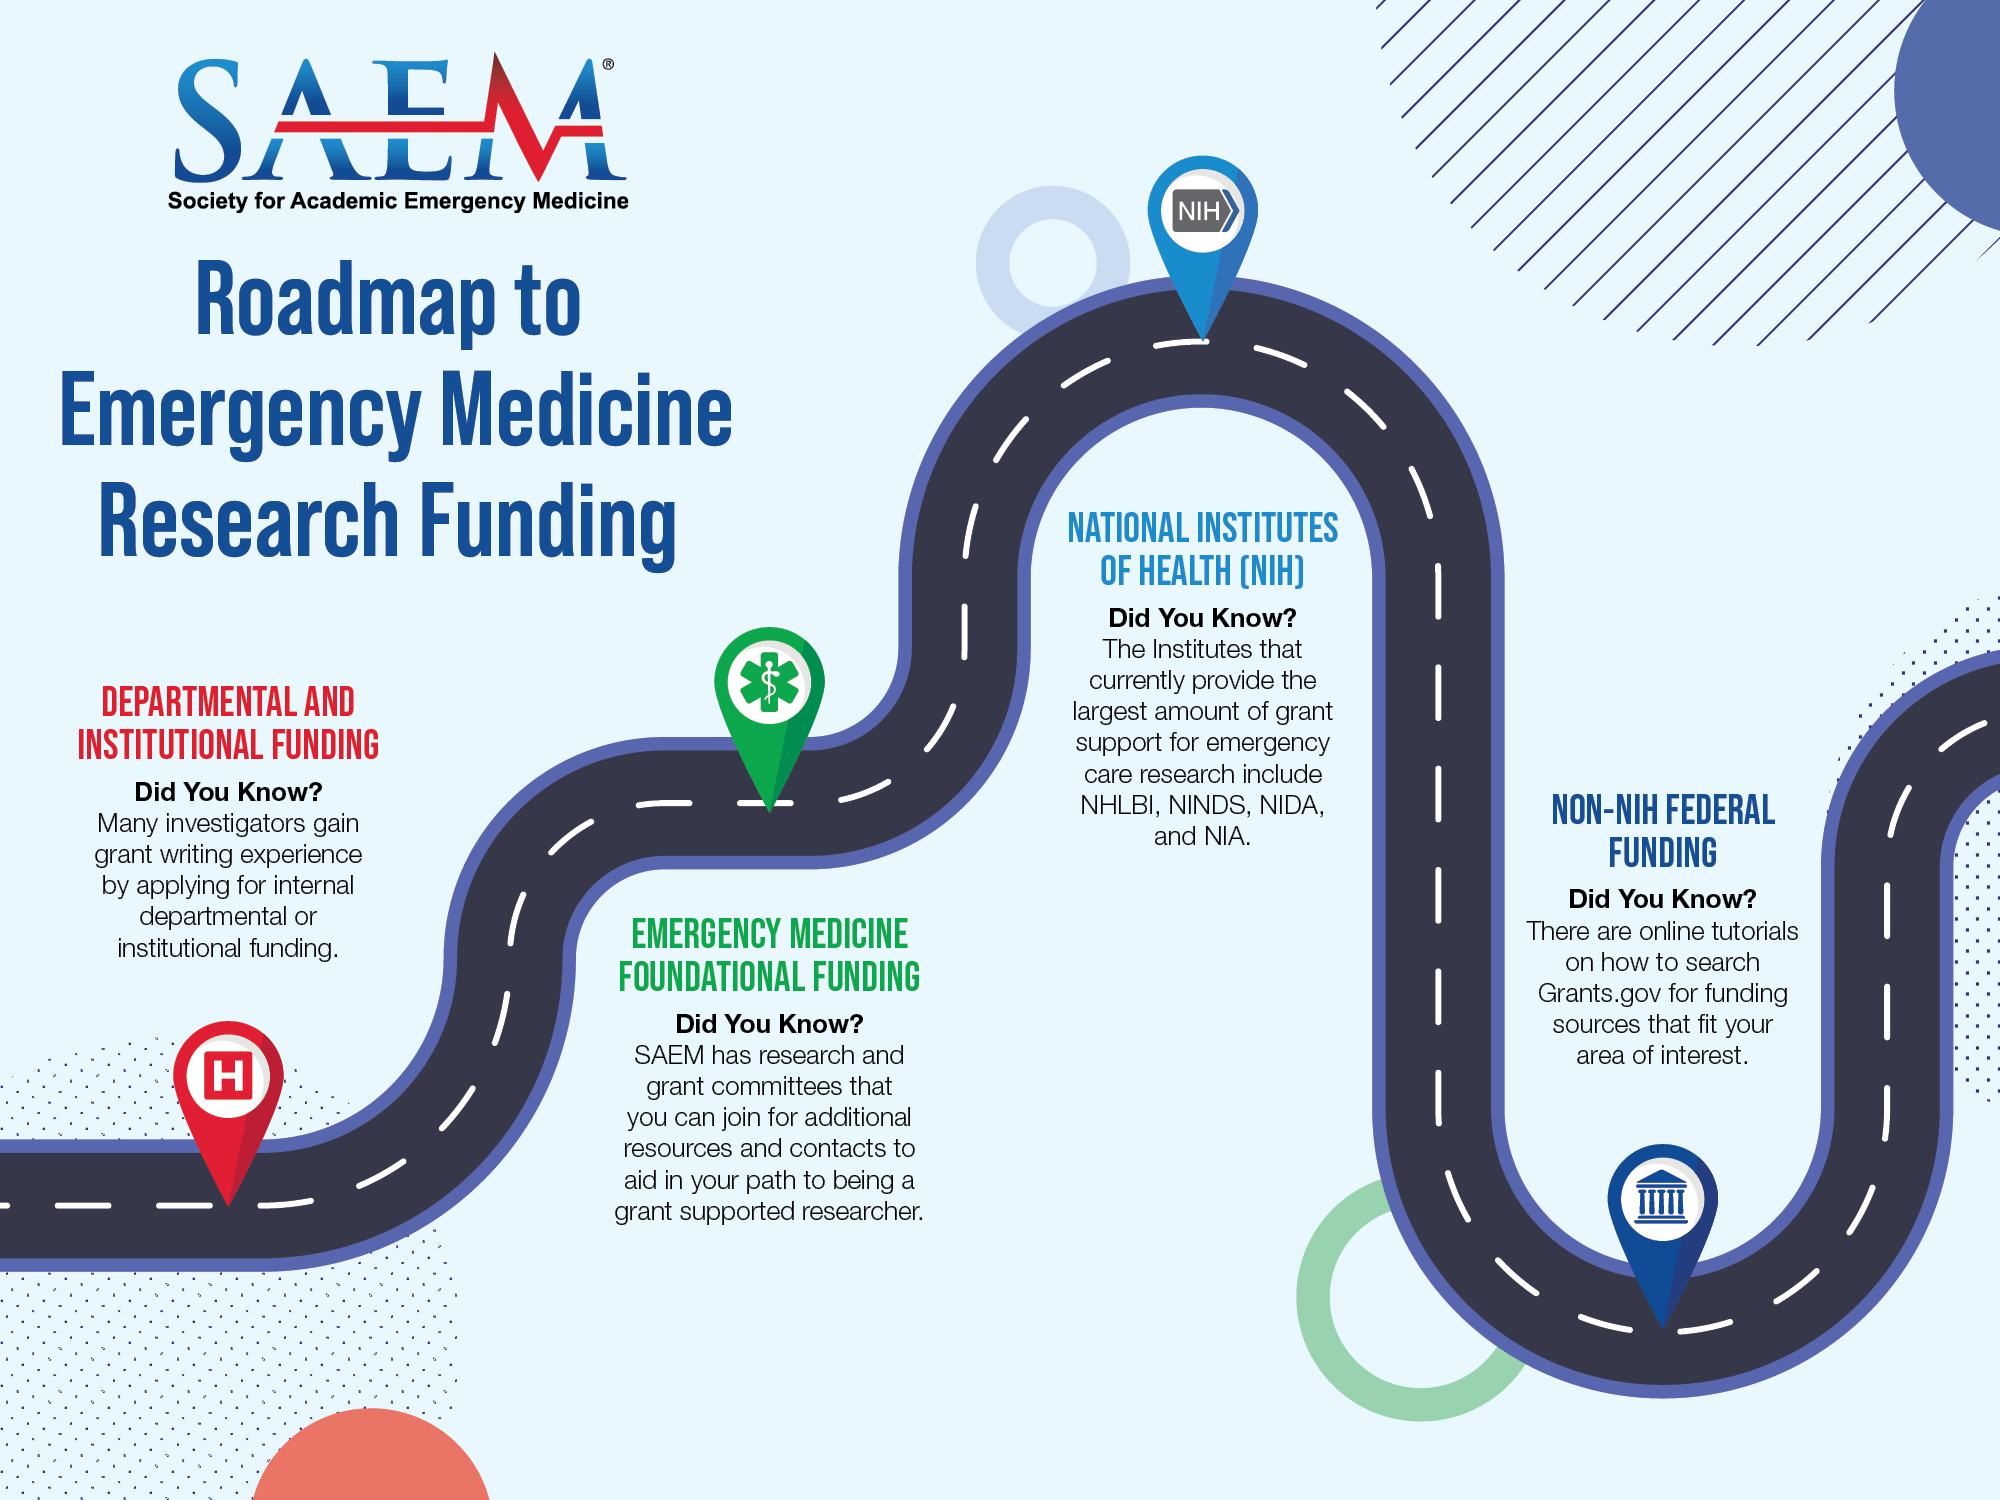 SAEM Roadmap to EM Research Funding